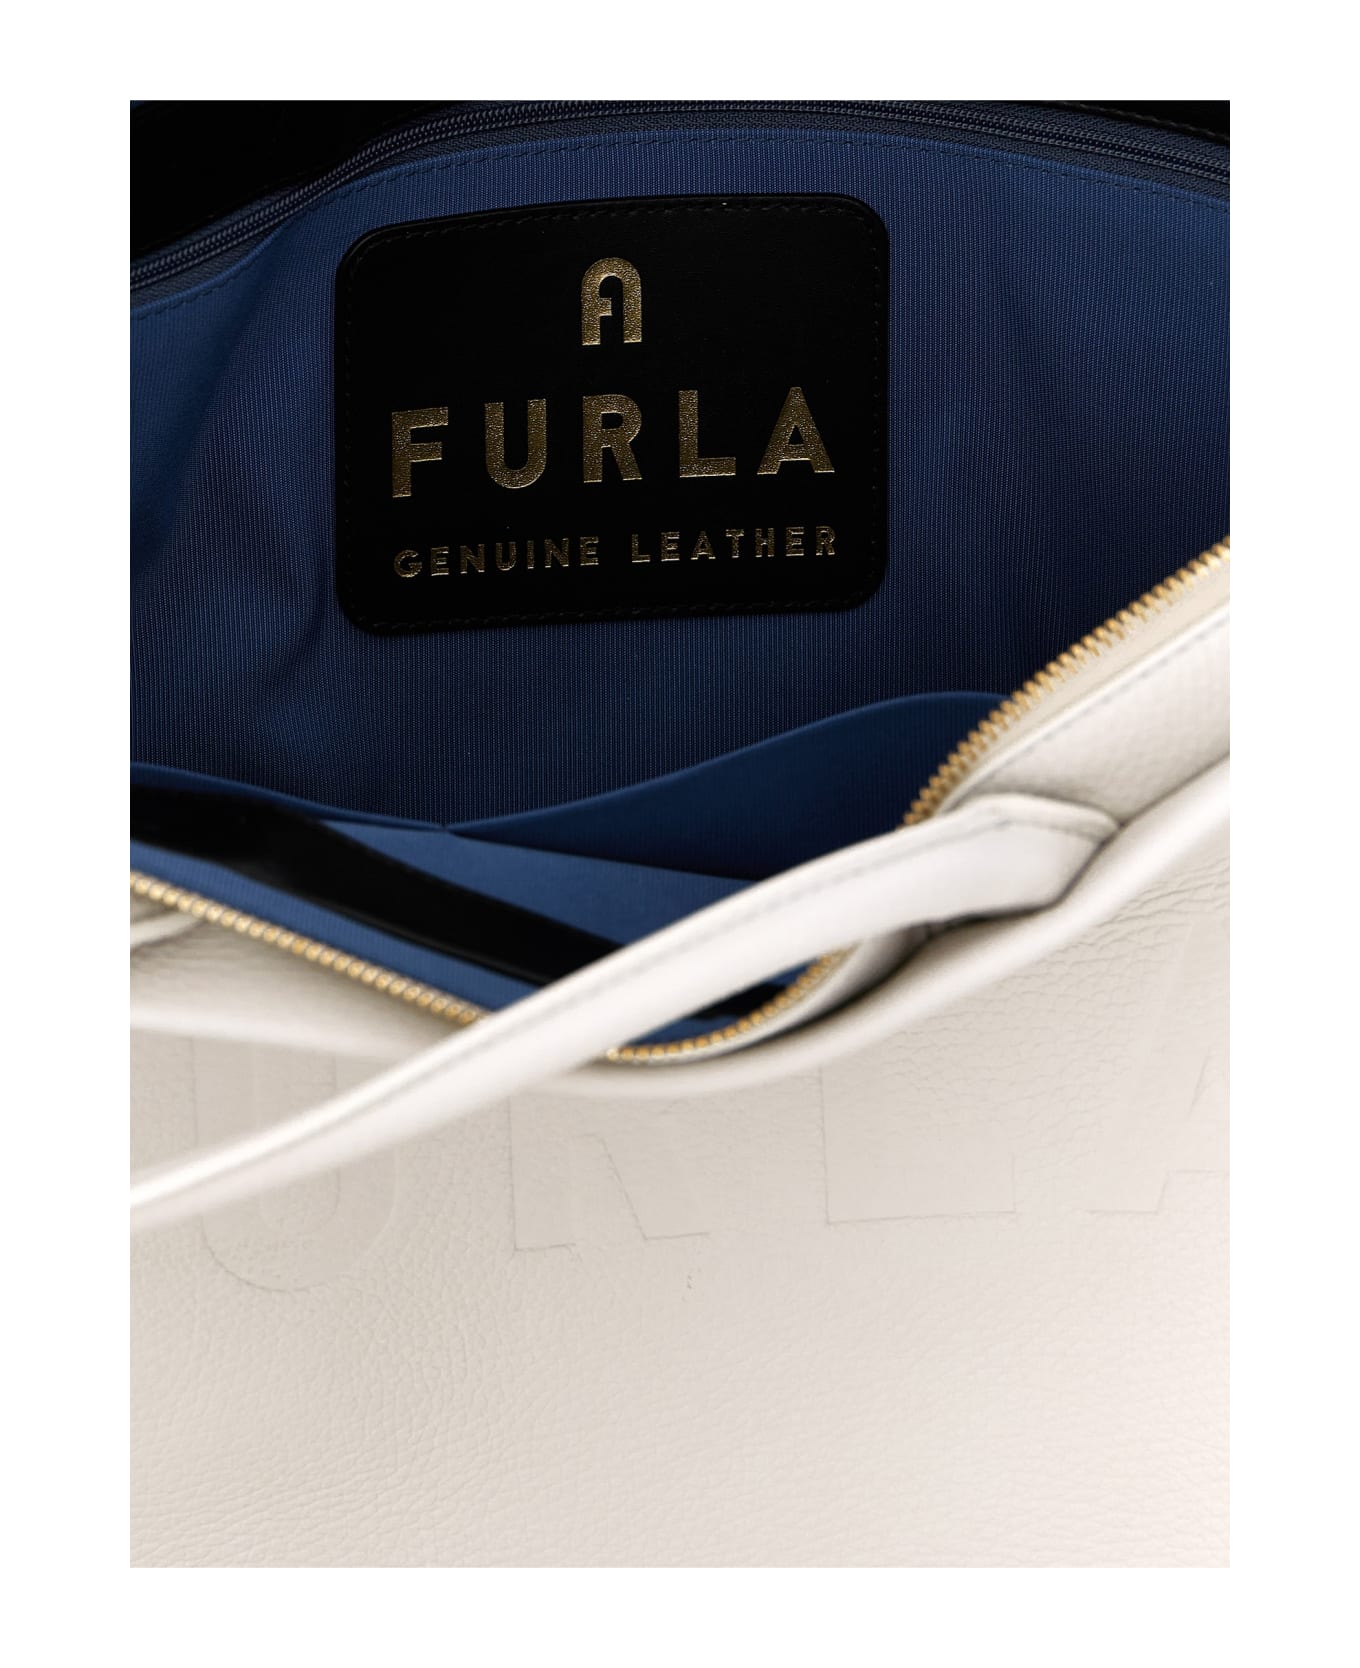 Furla 'opportunity L' Shopping Bag - White/Black